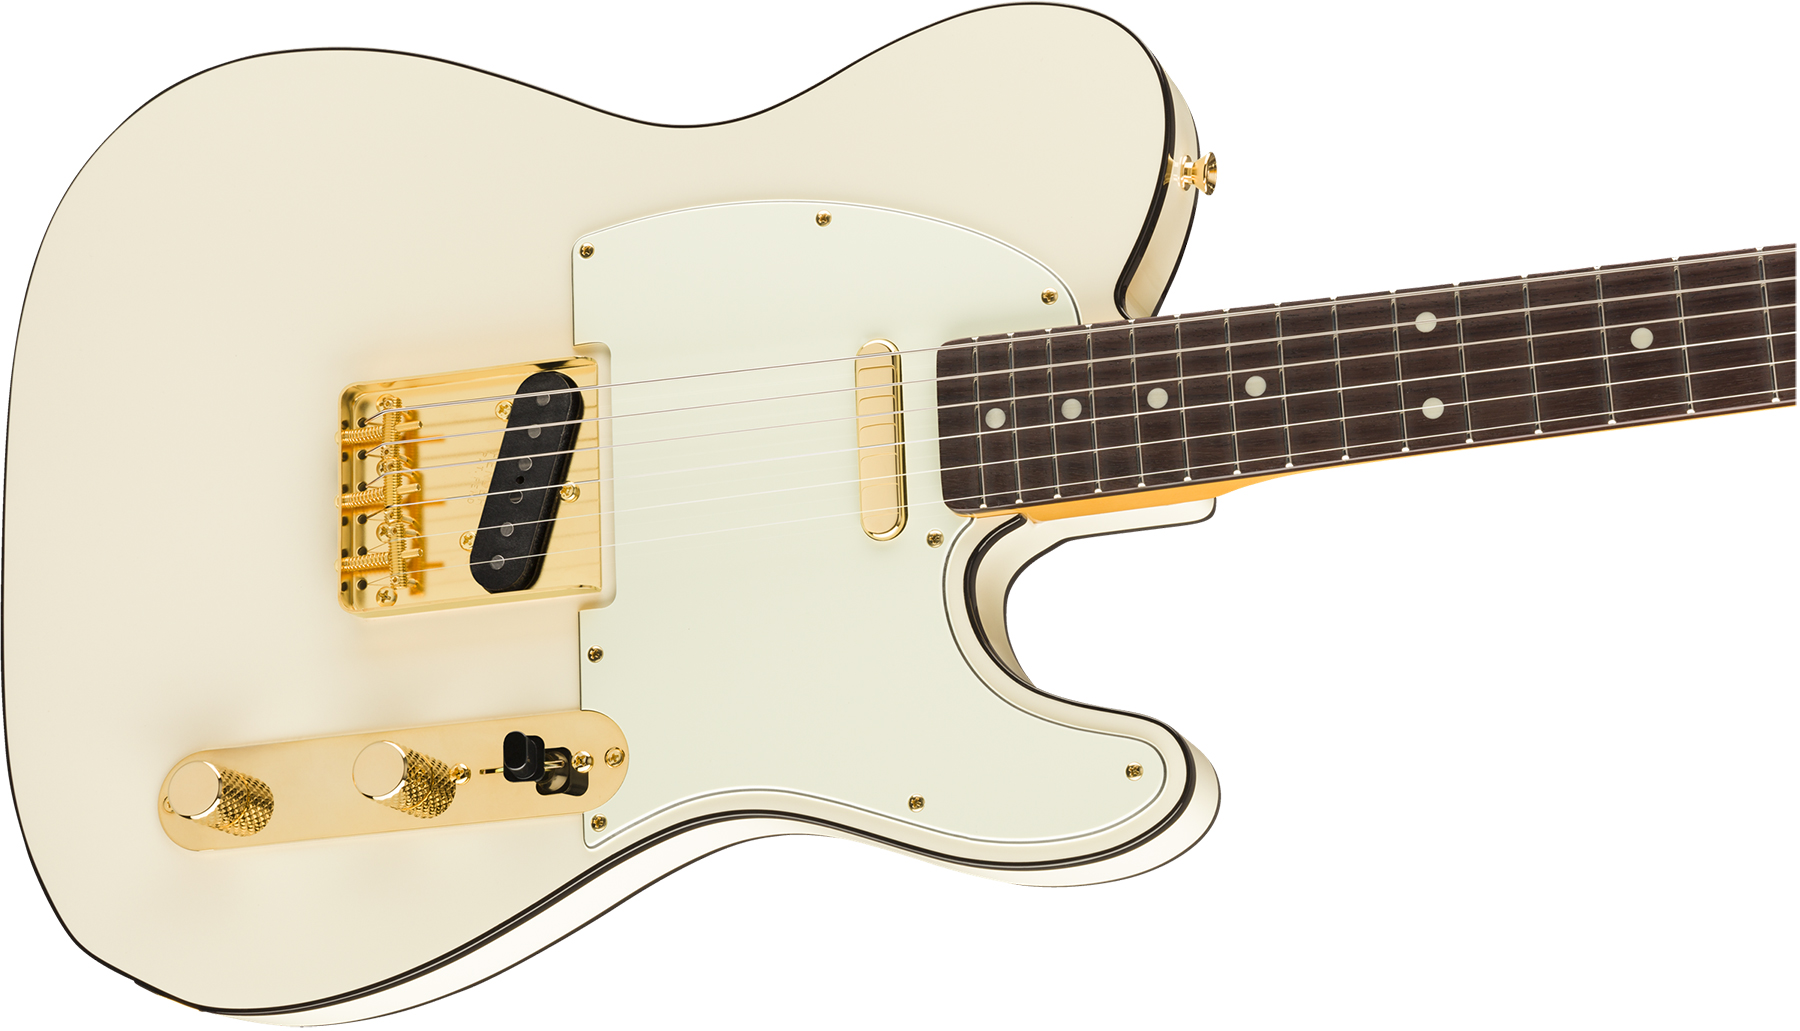 Fender Tele Daybreak Ltd 2019 Japon Gh Rw - Olympic White - Guitare Électrique Forme Tel - Variation 2